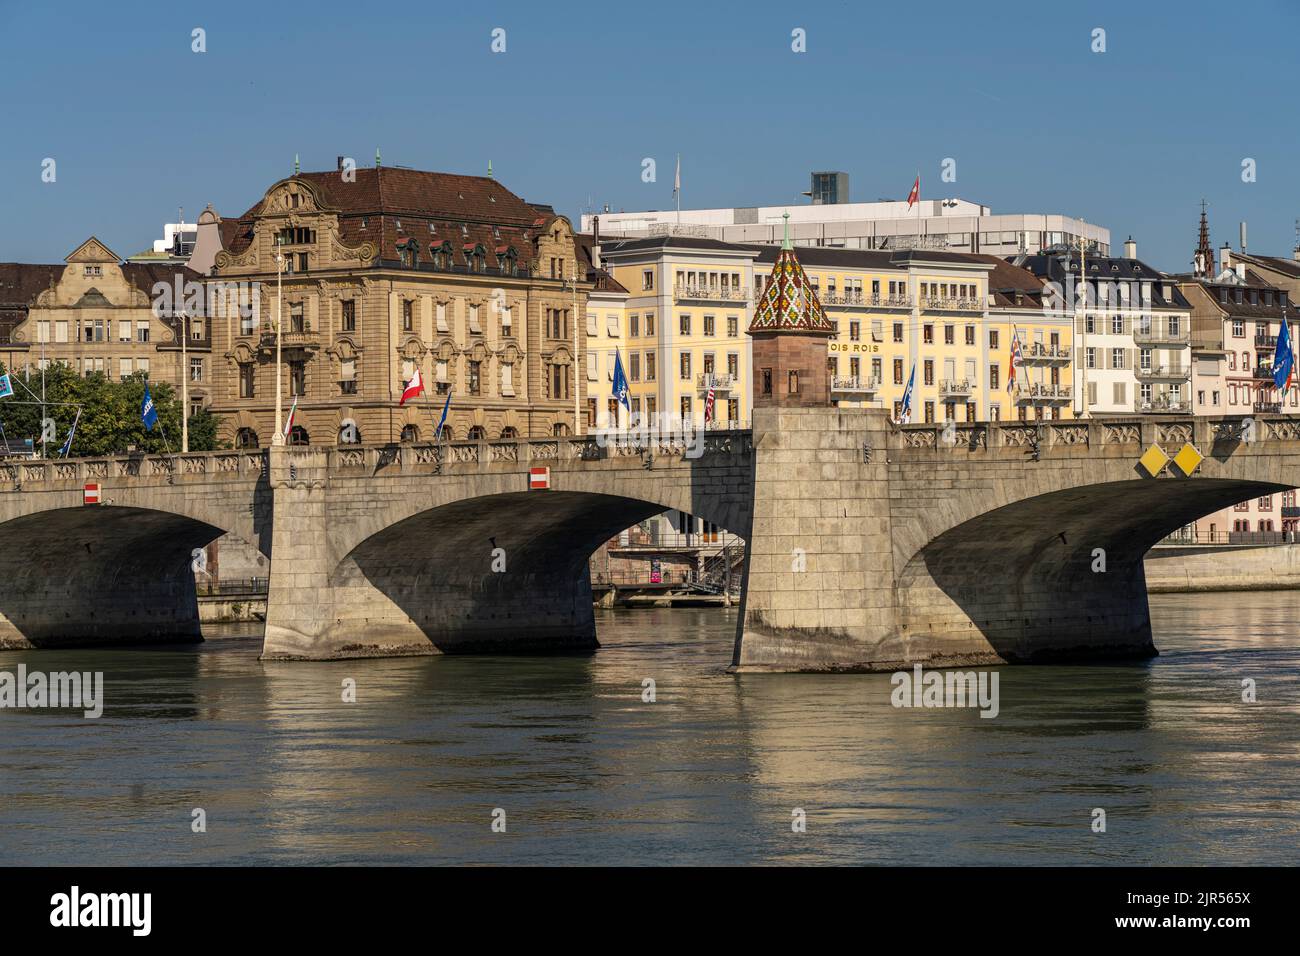 Die mittlere Brücke und der Rhein in Basel, Schweiz, Europa | die Mittelbrücke und der Rhein in Basel, Schweiz, Europa Stockfoto